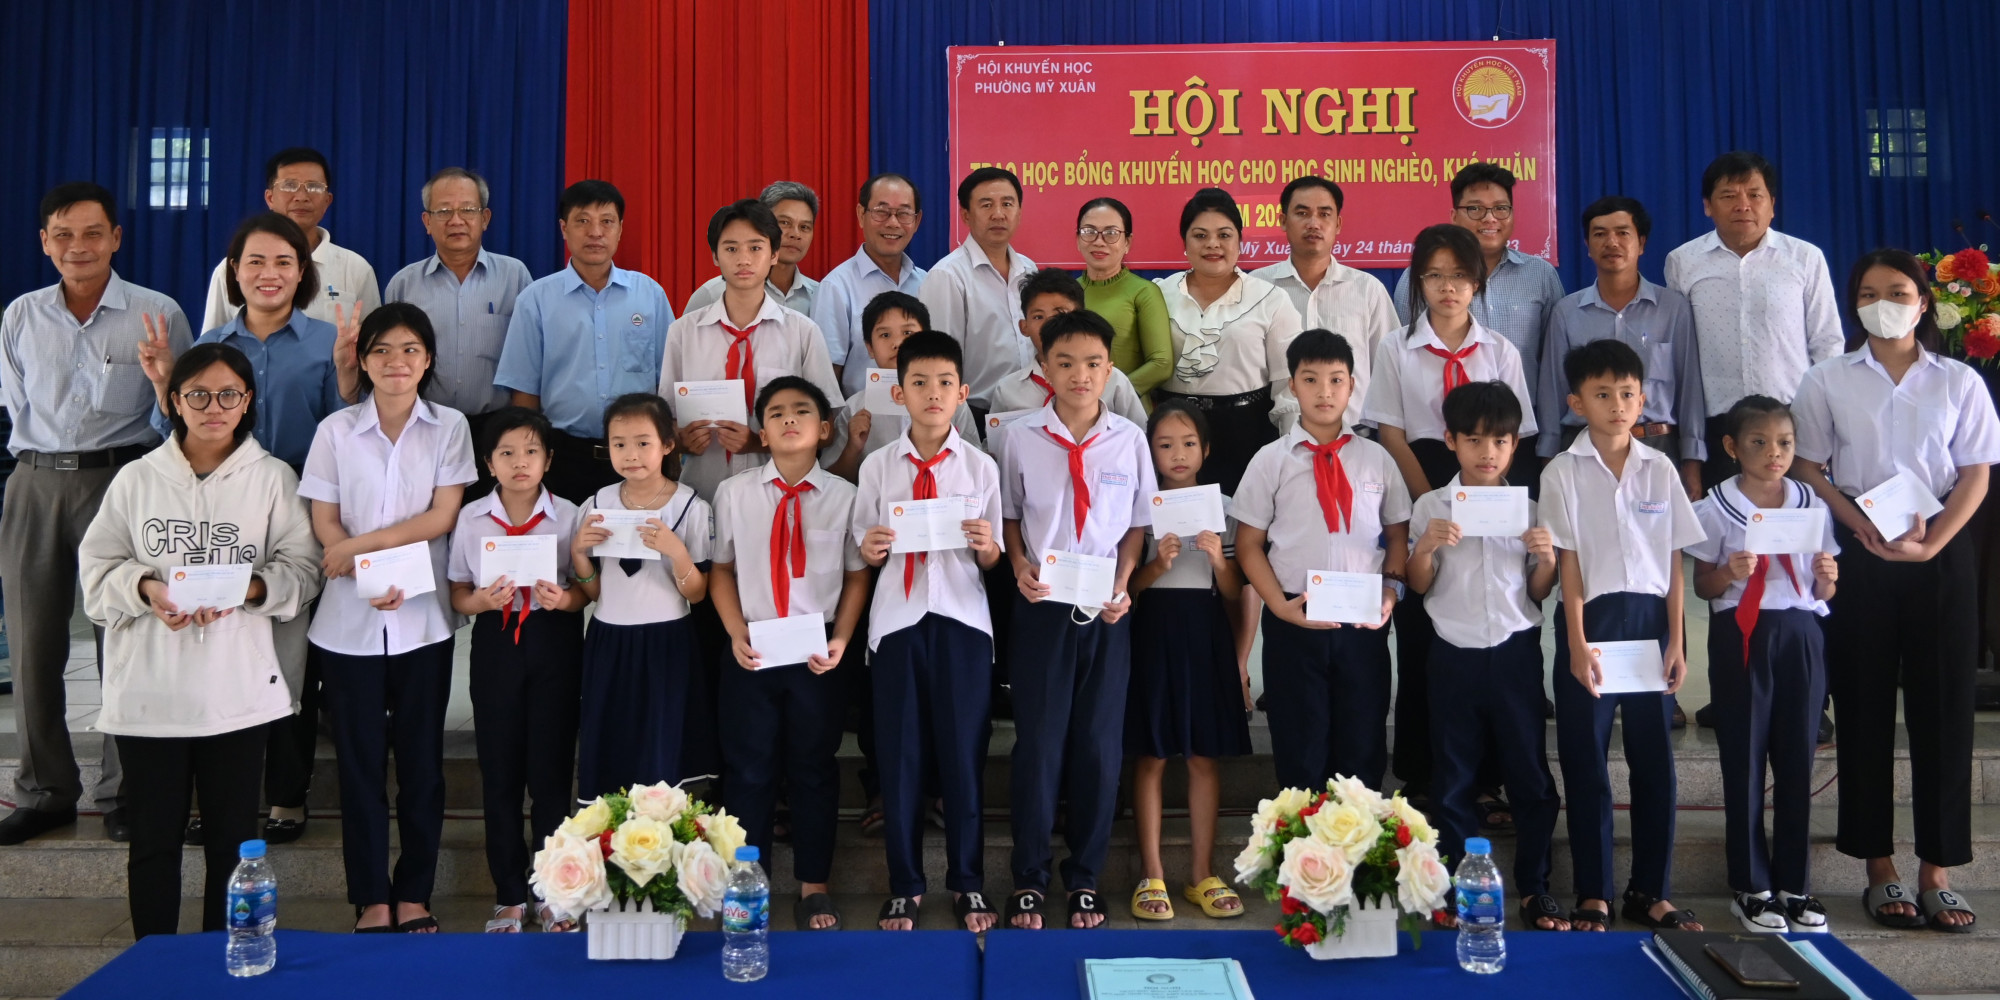 Bà Nguyễn Thu Thủy - Phó giám đốc Đối ngoại Công ty Vedan (thứ 5 phải qua) trao tặng học bổng khuyến học đến các em học sinh tại phường Mỹ Xuân - Ảnh: Vedan